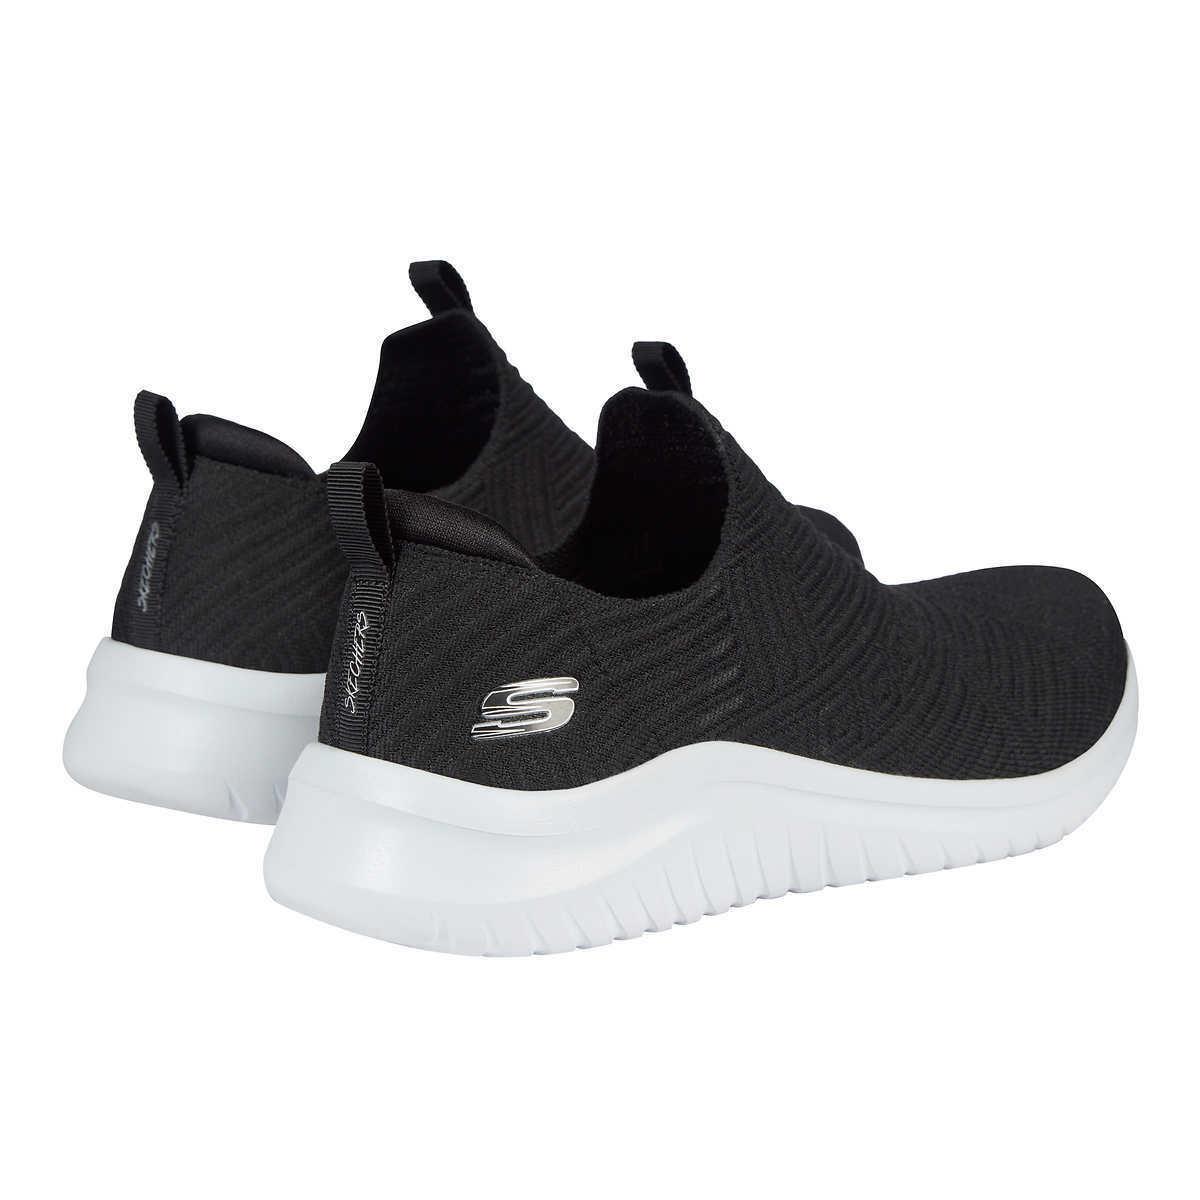 Skechers shoes Ultra Comfort 10